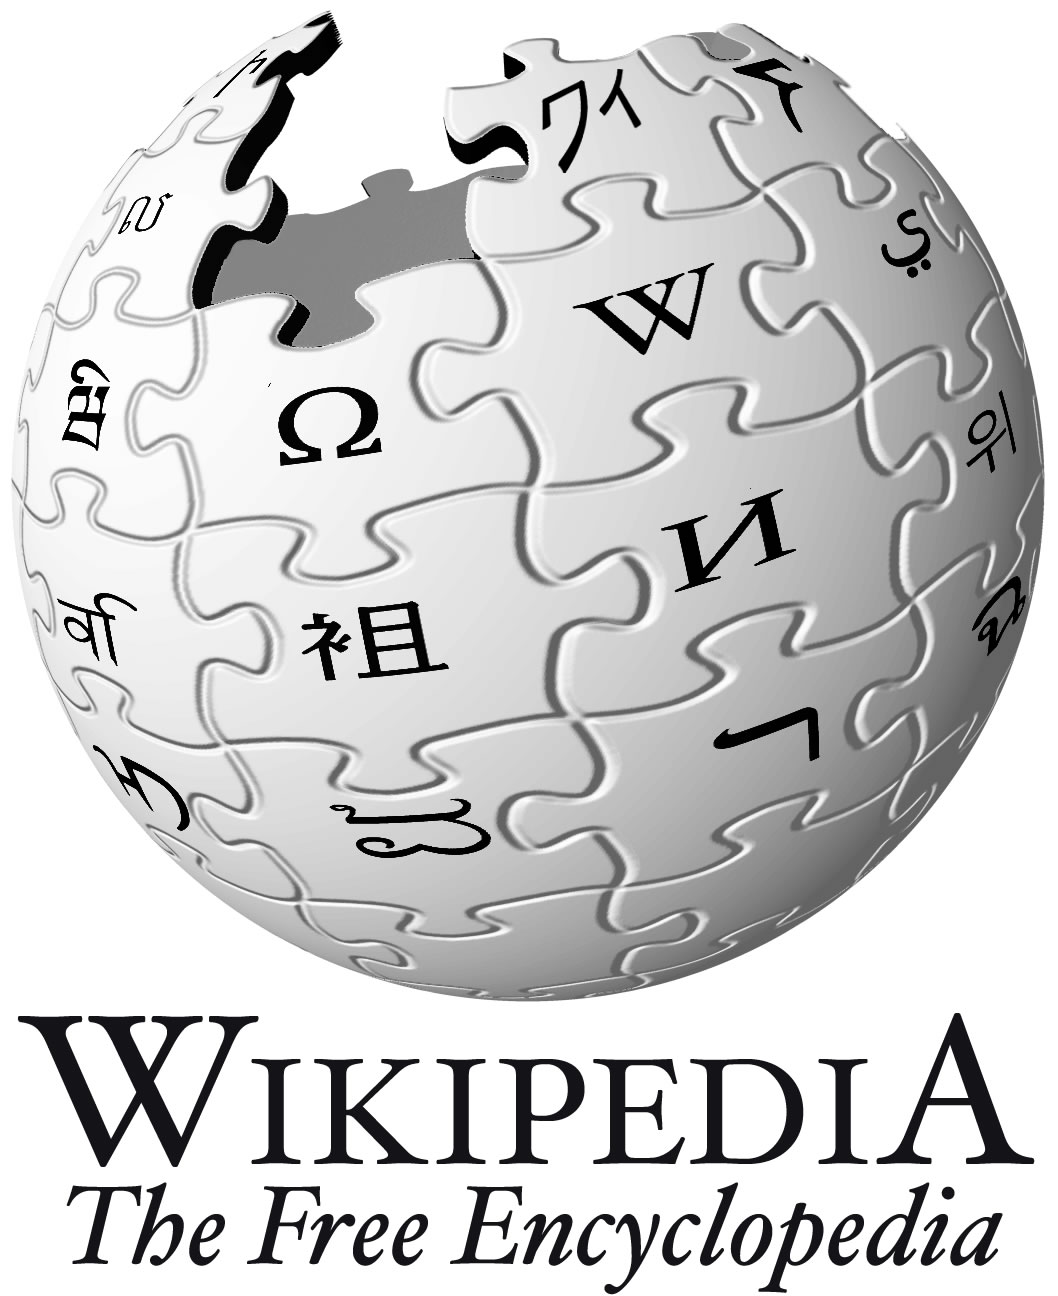 Men in black - Wikipedia